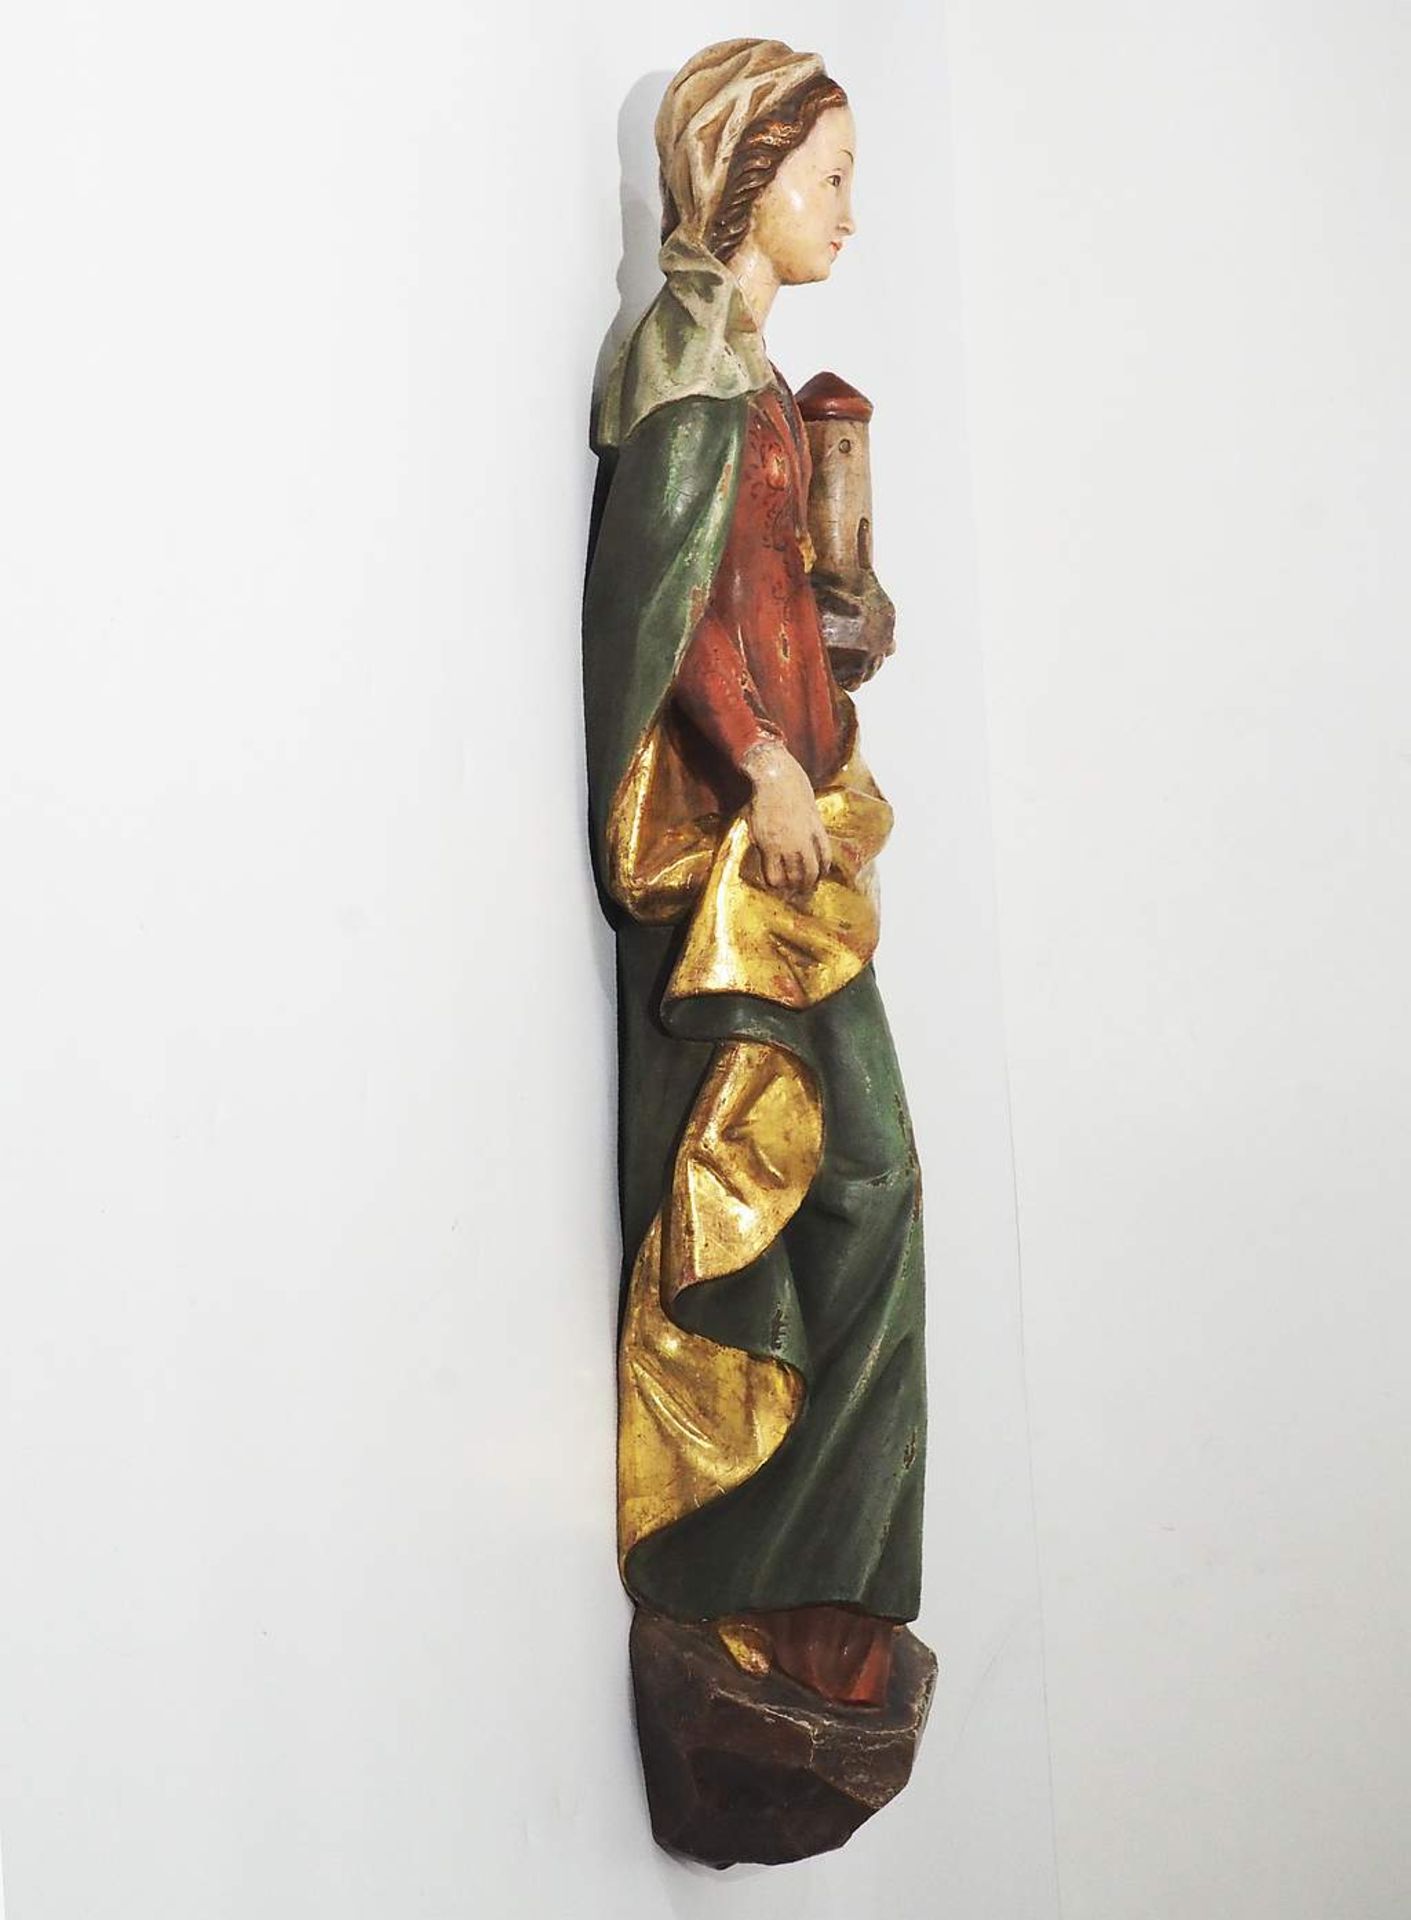 Heiligen-Wandskulptur " Heilige Barbara" mit dem Turm im linken Arm. - Image 5 of 7